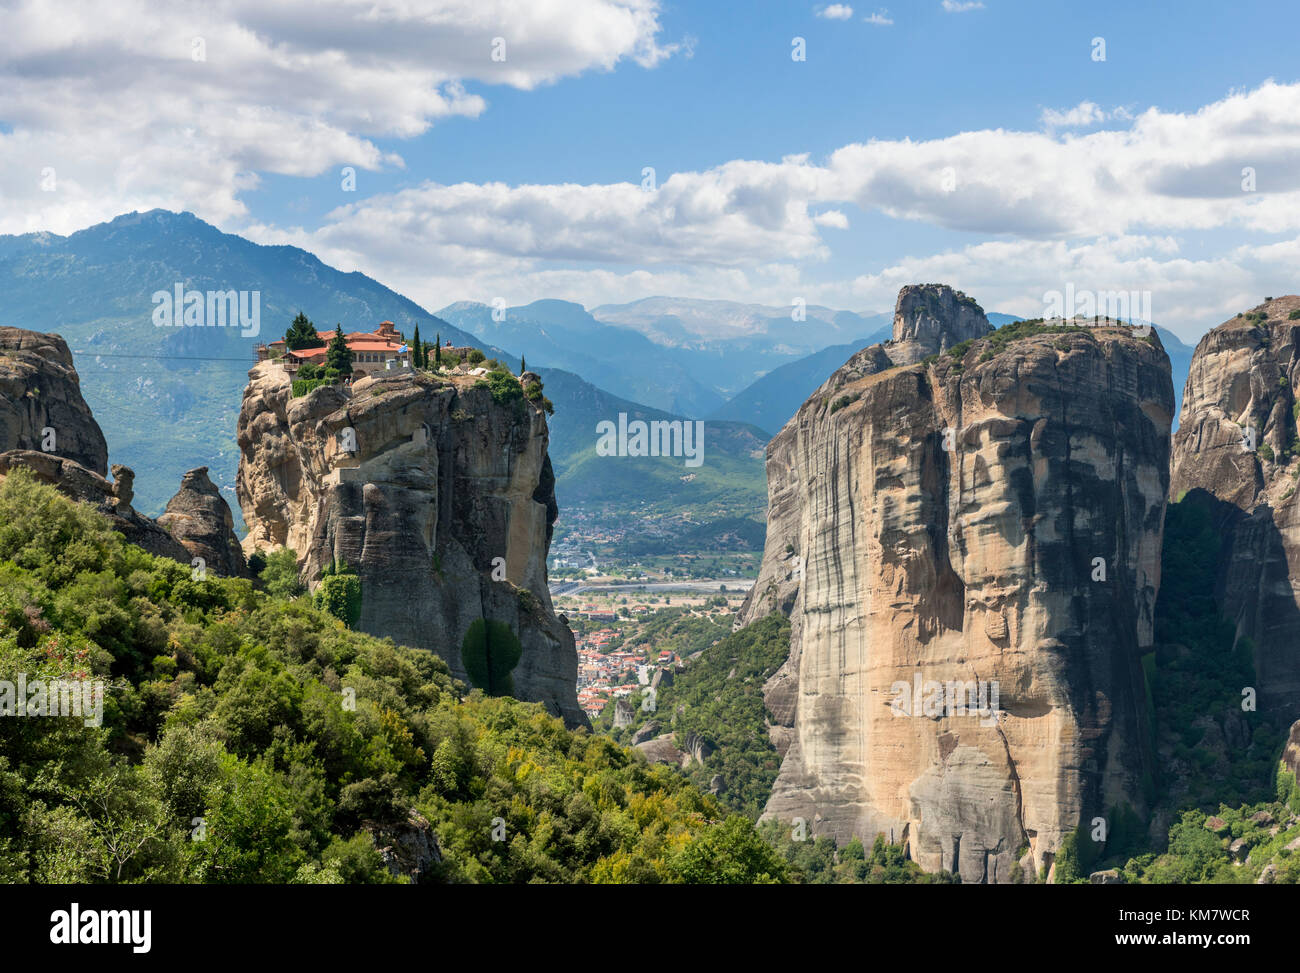 The Monastery of Ayias Triadhos (Ayia Triada), Meteora Monasteries, Kalambaka, Greece Stock Photo